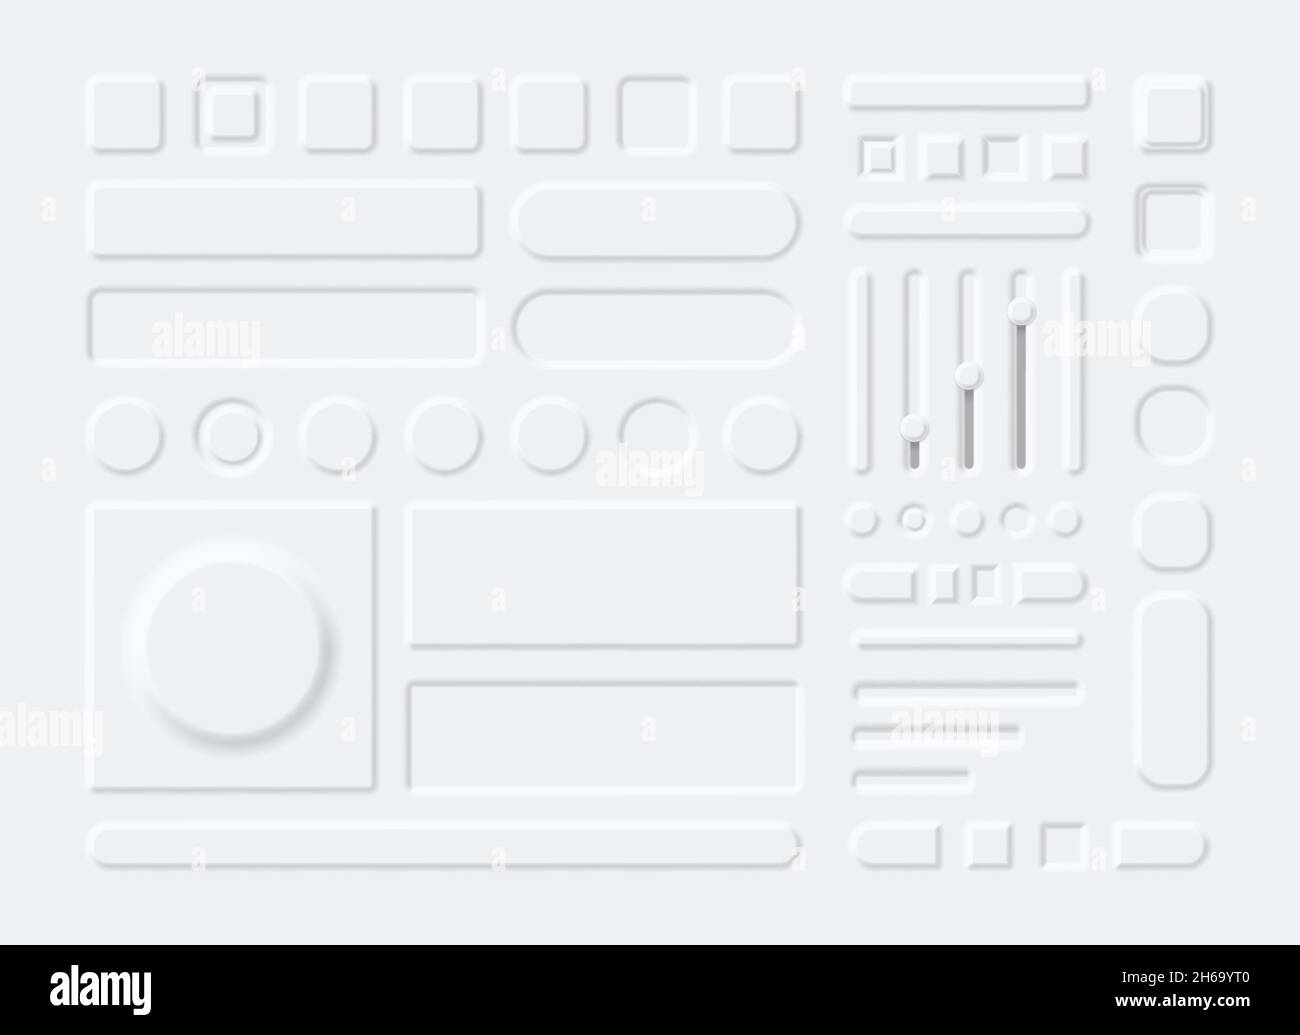 3d-Elemente, Schaltflächen, Menüs und Schieberegler im Neumorphismus-Stil. Neumorphic weiße runde und rechteckige Panels für Telefon-App-Vektor-Set Stock Vektor